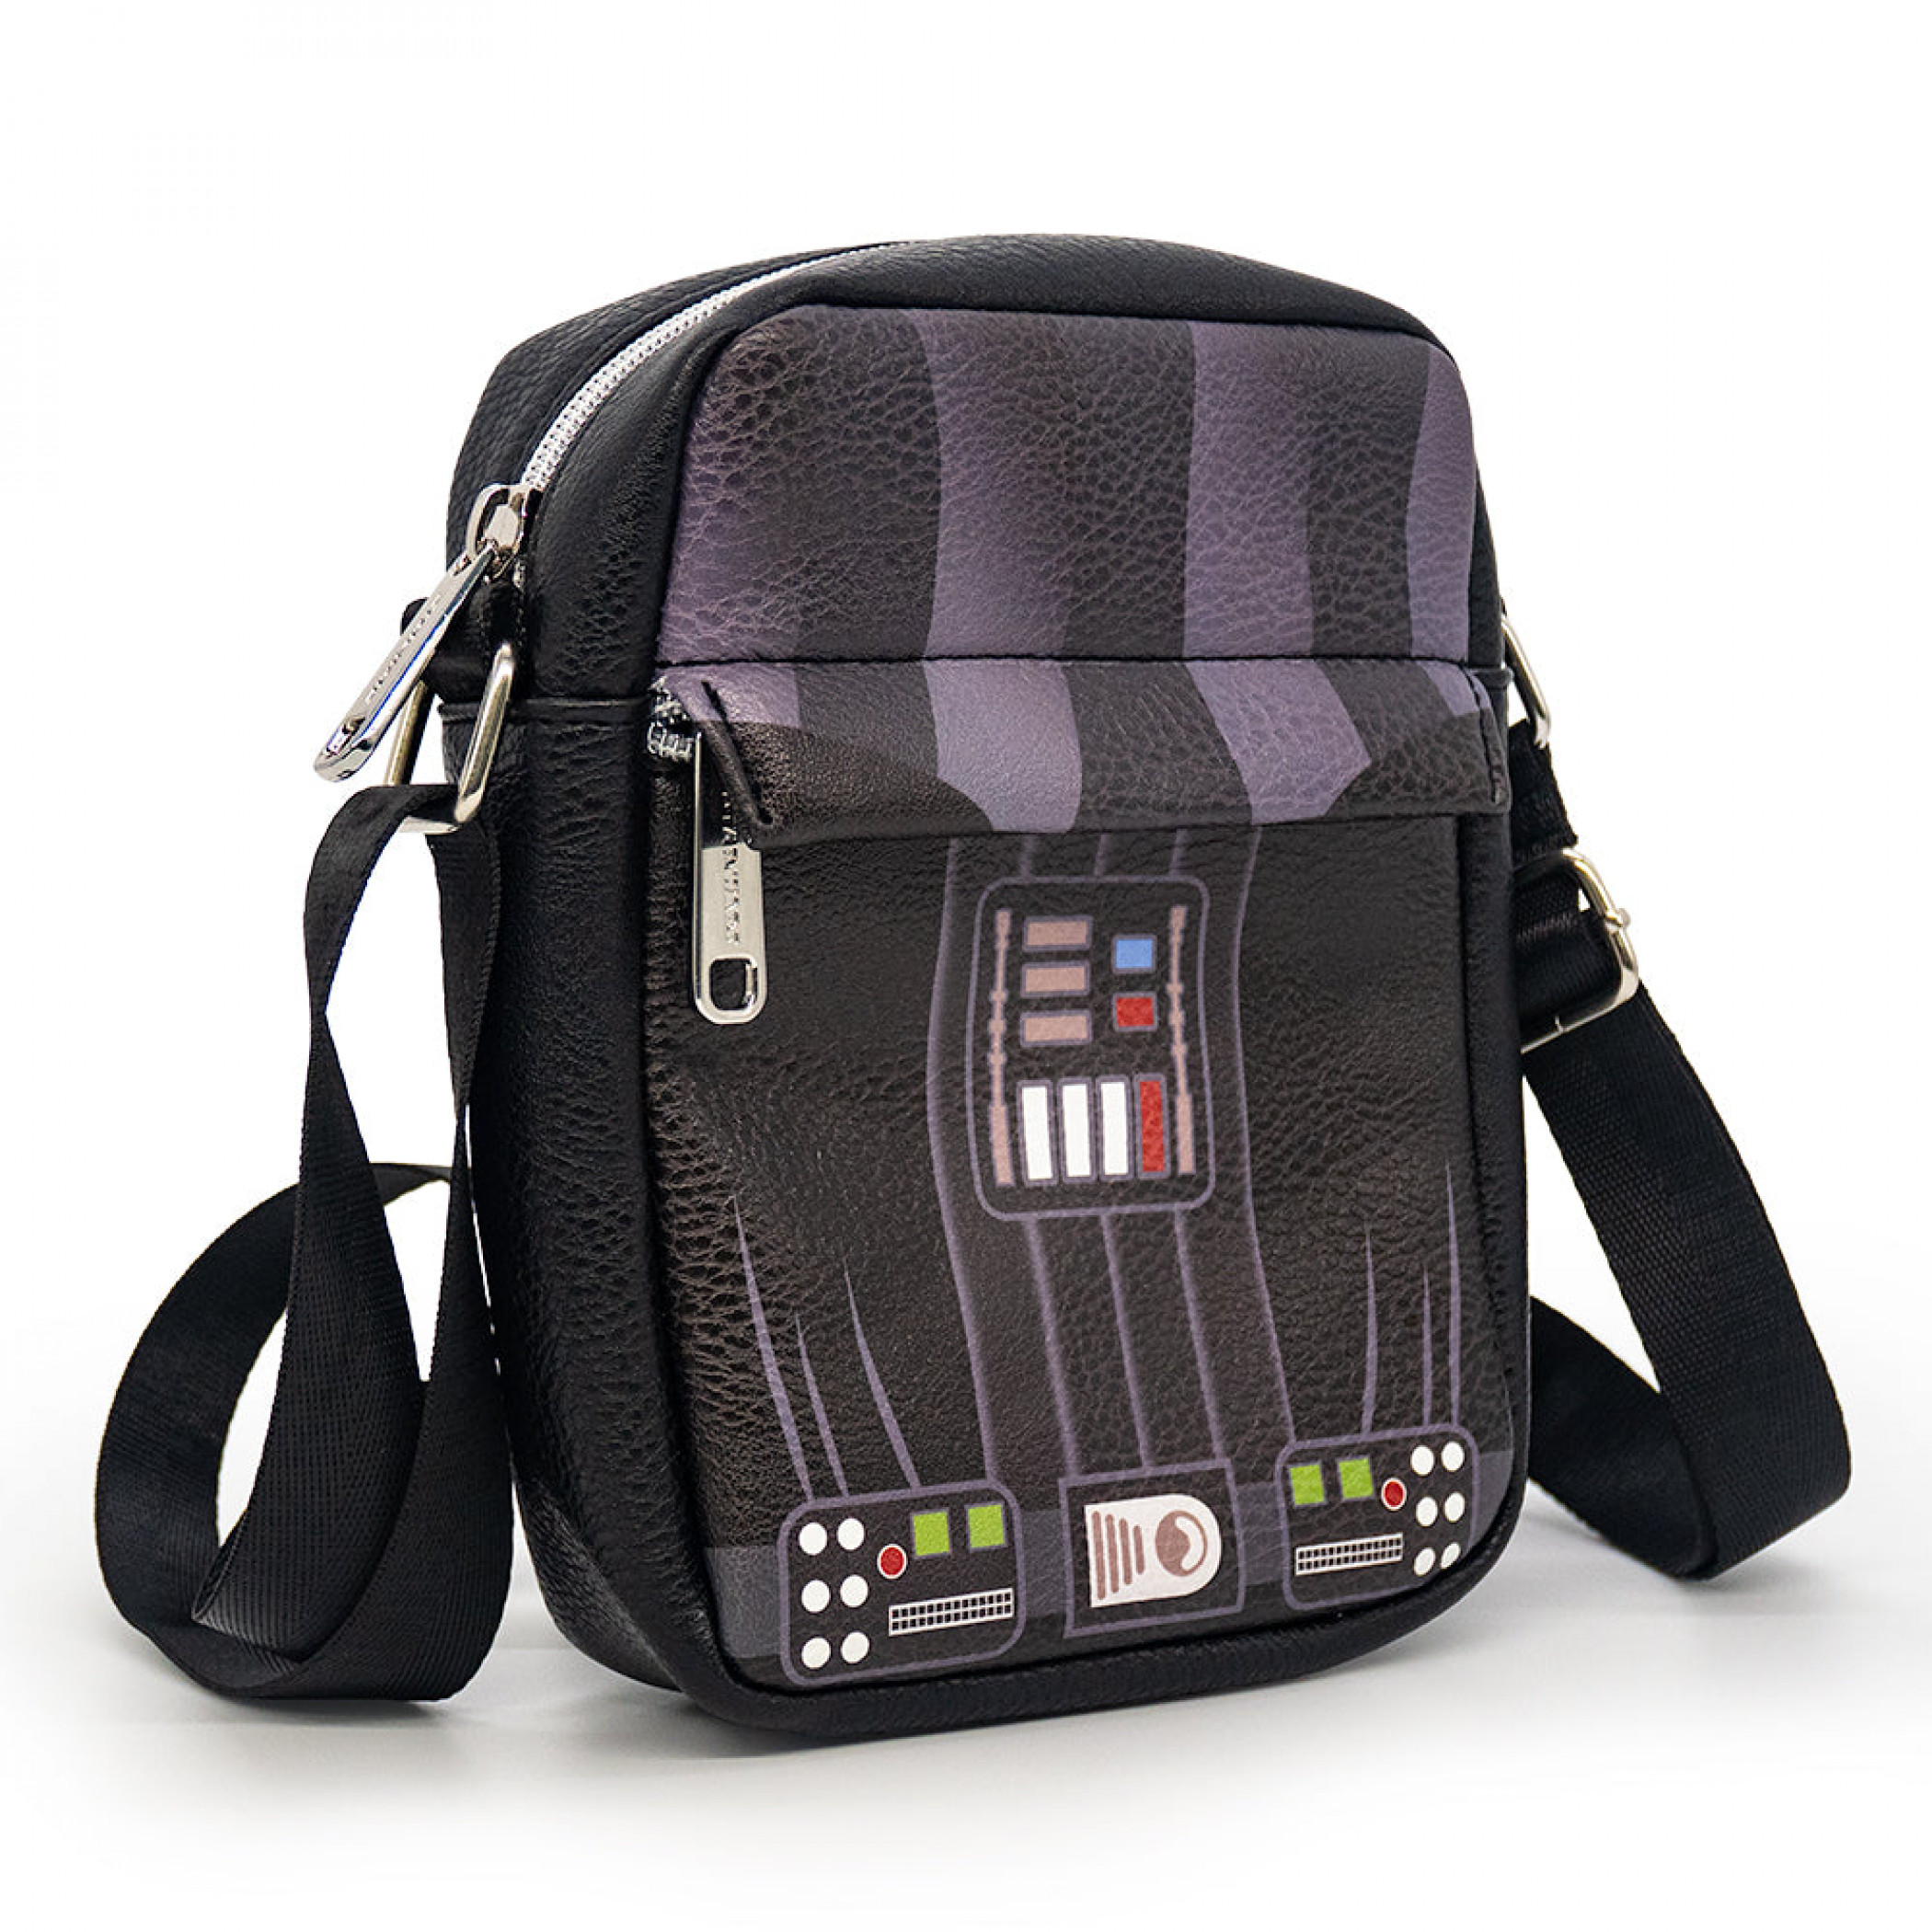 Star Wars Darth Vader Cosplay Crossbody Bag